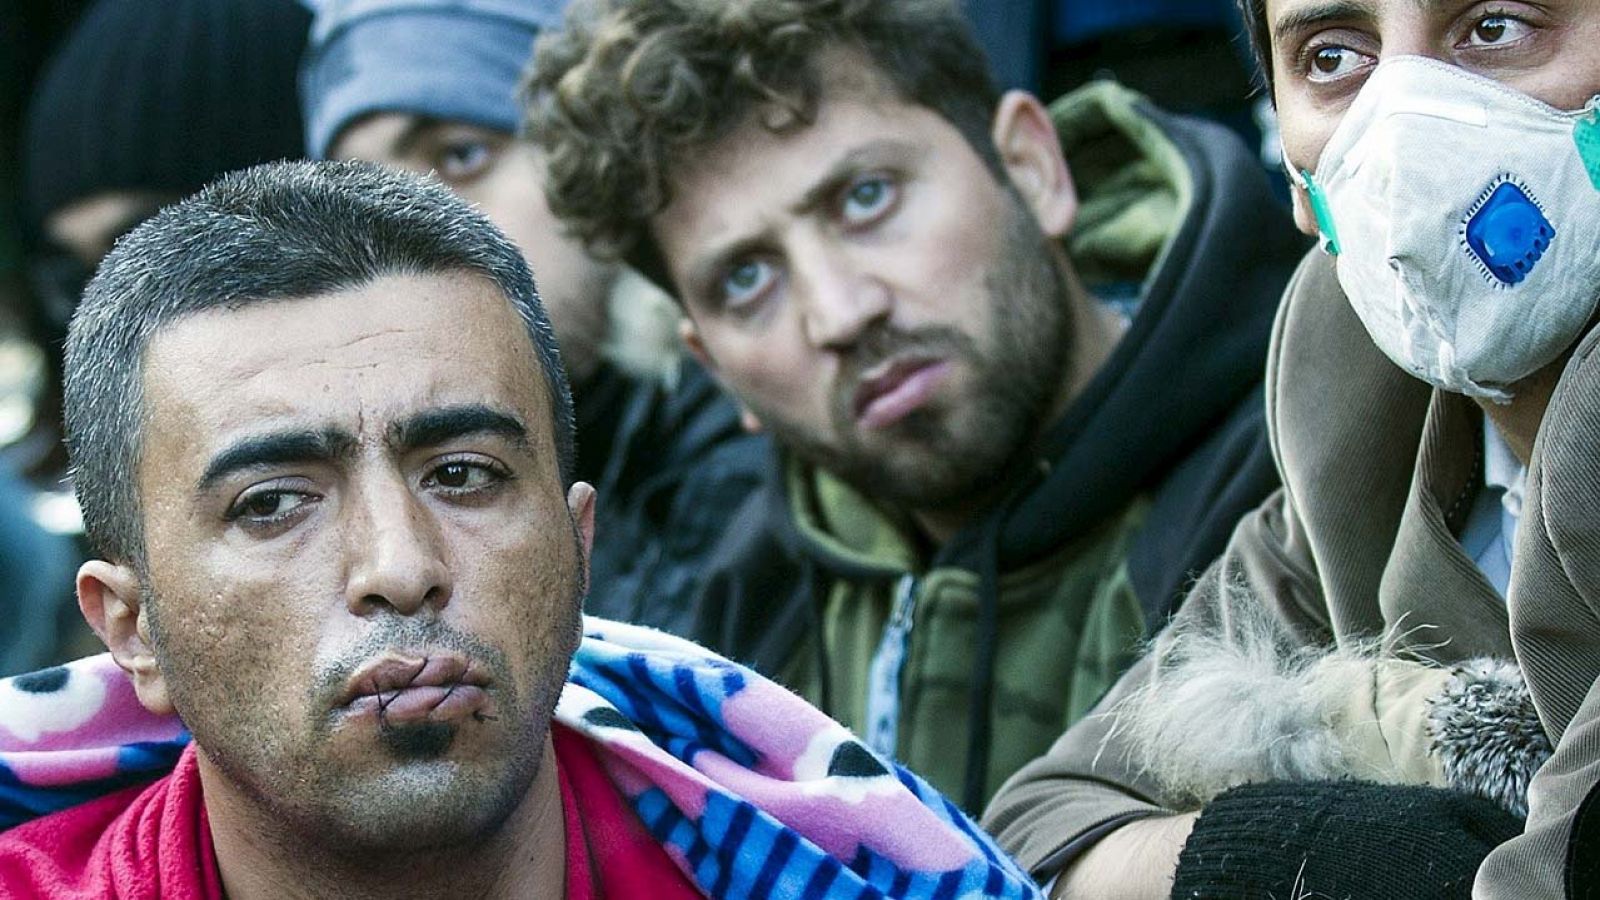 Refugiados iraníes con las bocas cosidas durante la huelga de hambre en Gevgelija, en la frontera entre Macedonia y Grecia, el 23 de noviembre de 2015. AFP PHOTO / ROBERT ATANASOVSKI